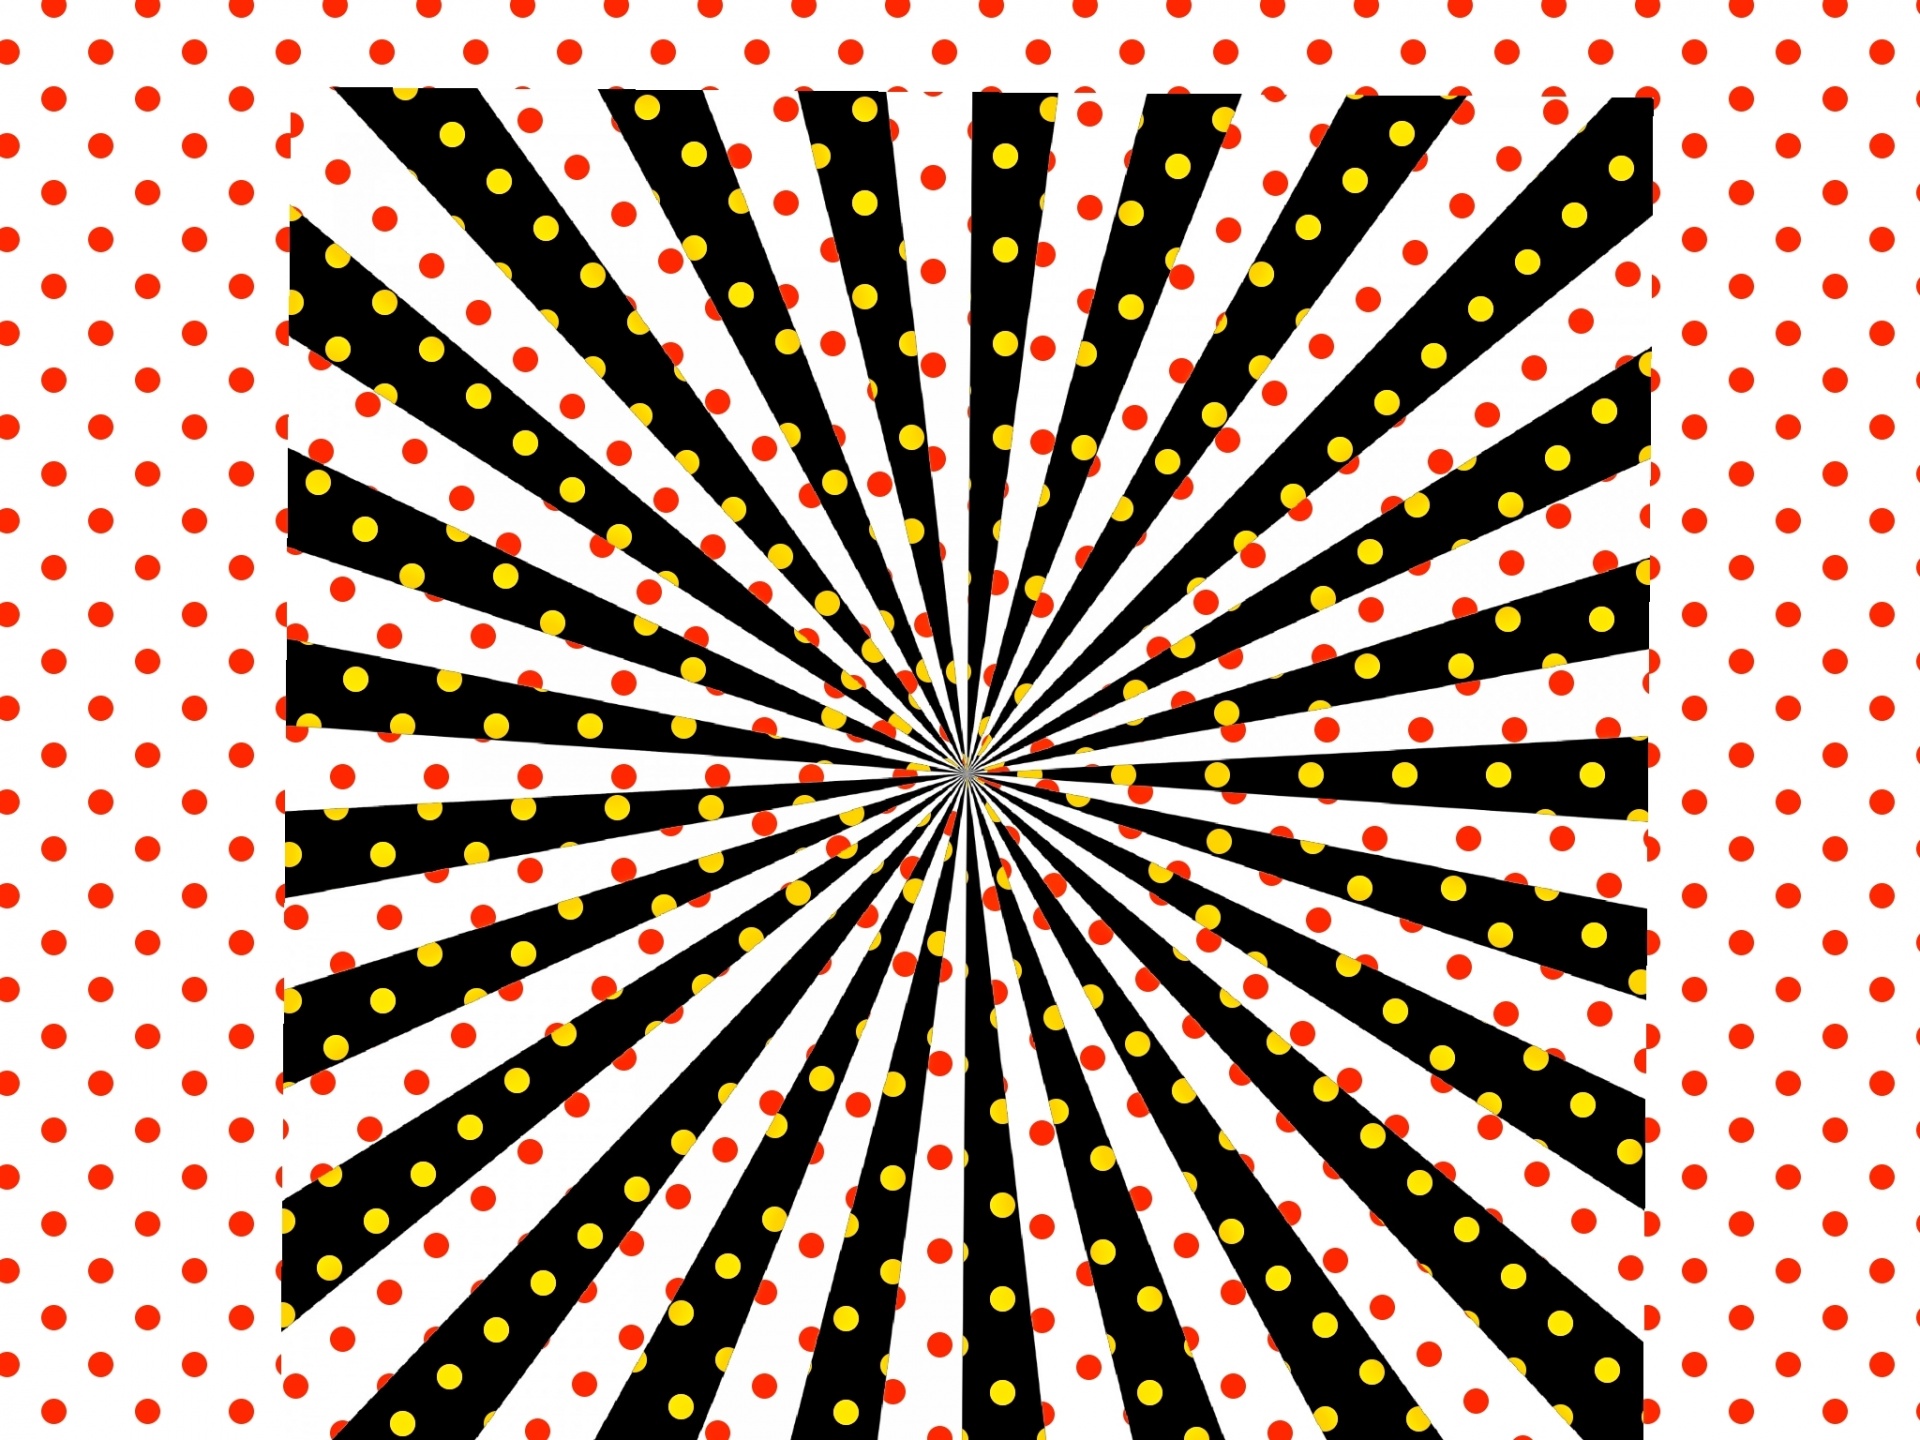 hypnotics dots spiral free photo